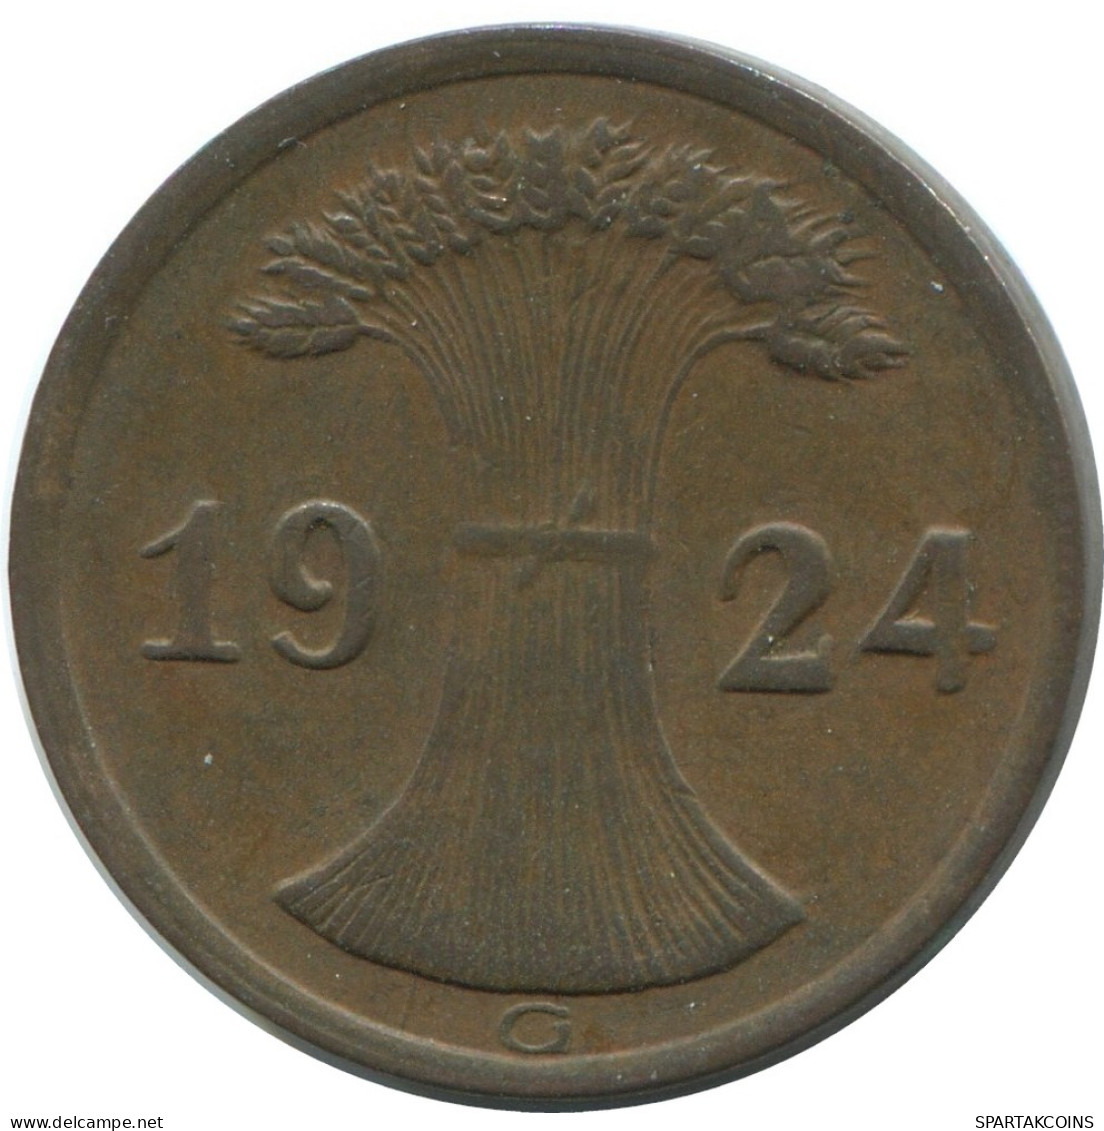 2 REICHSPFENNIG 1924 G ALEMANIA Moneda GERMANY #AE279.E - 2 Rentenpfennig & 2 Reichspfennig